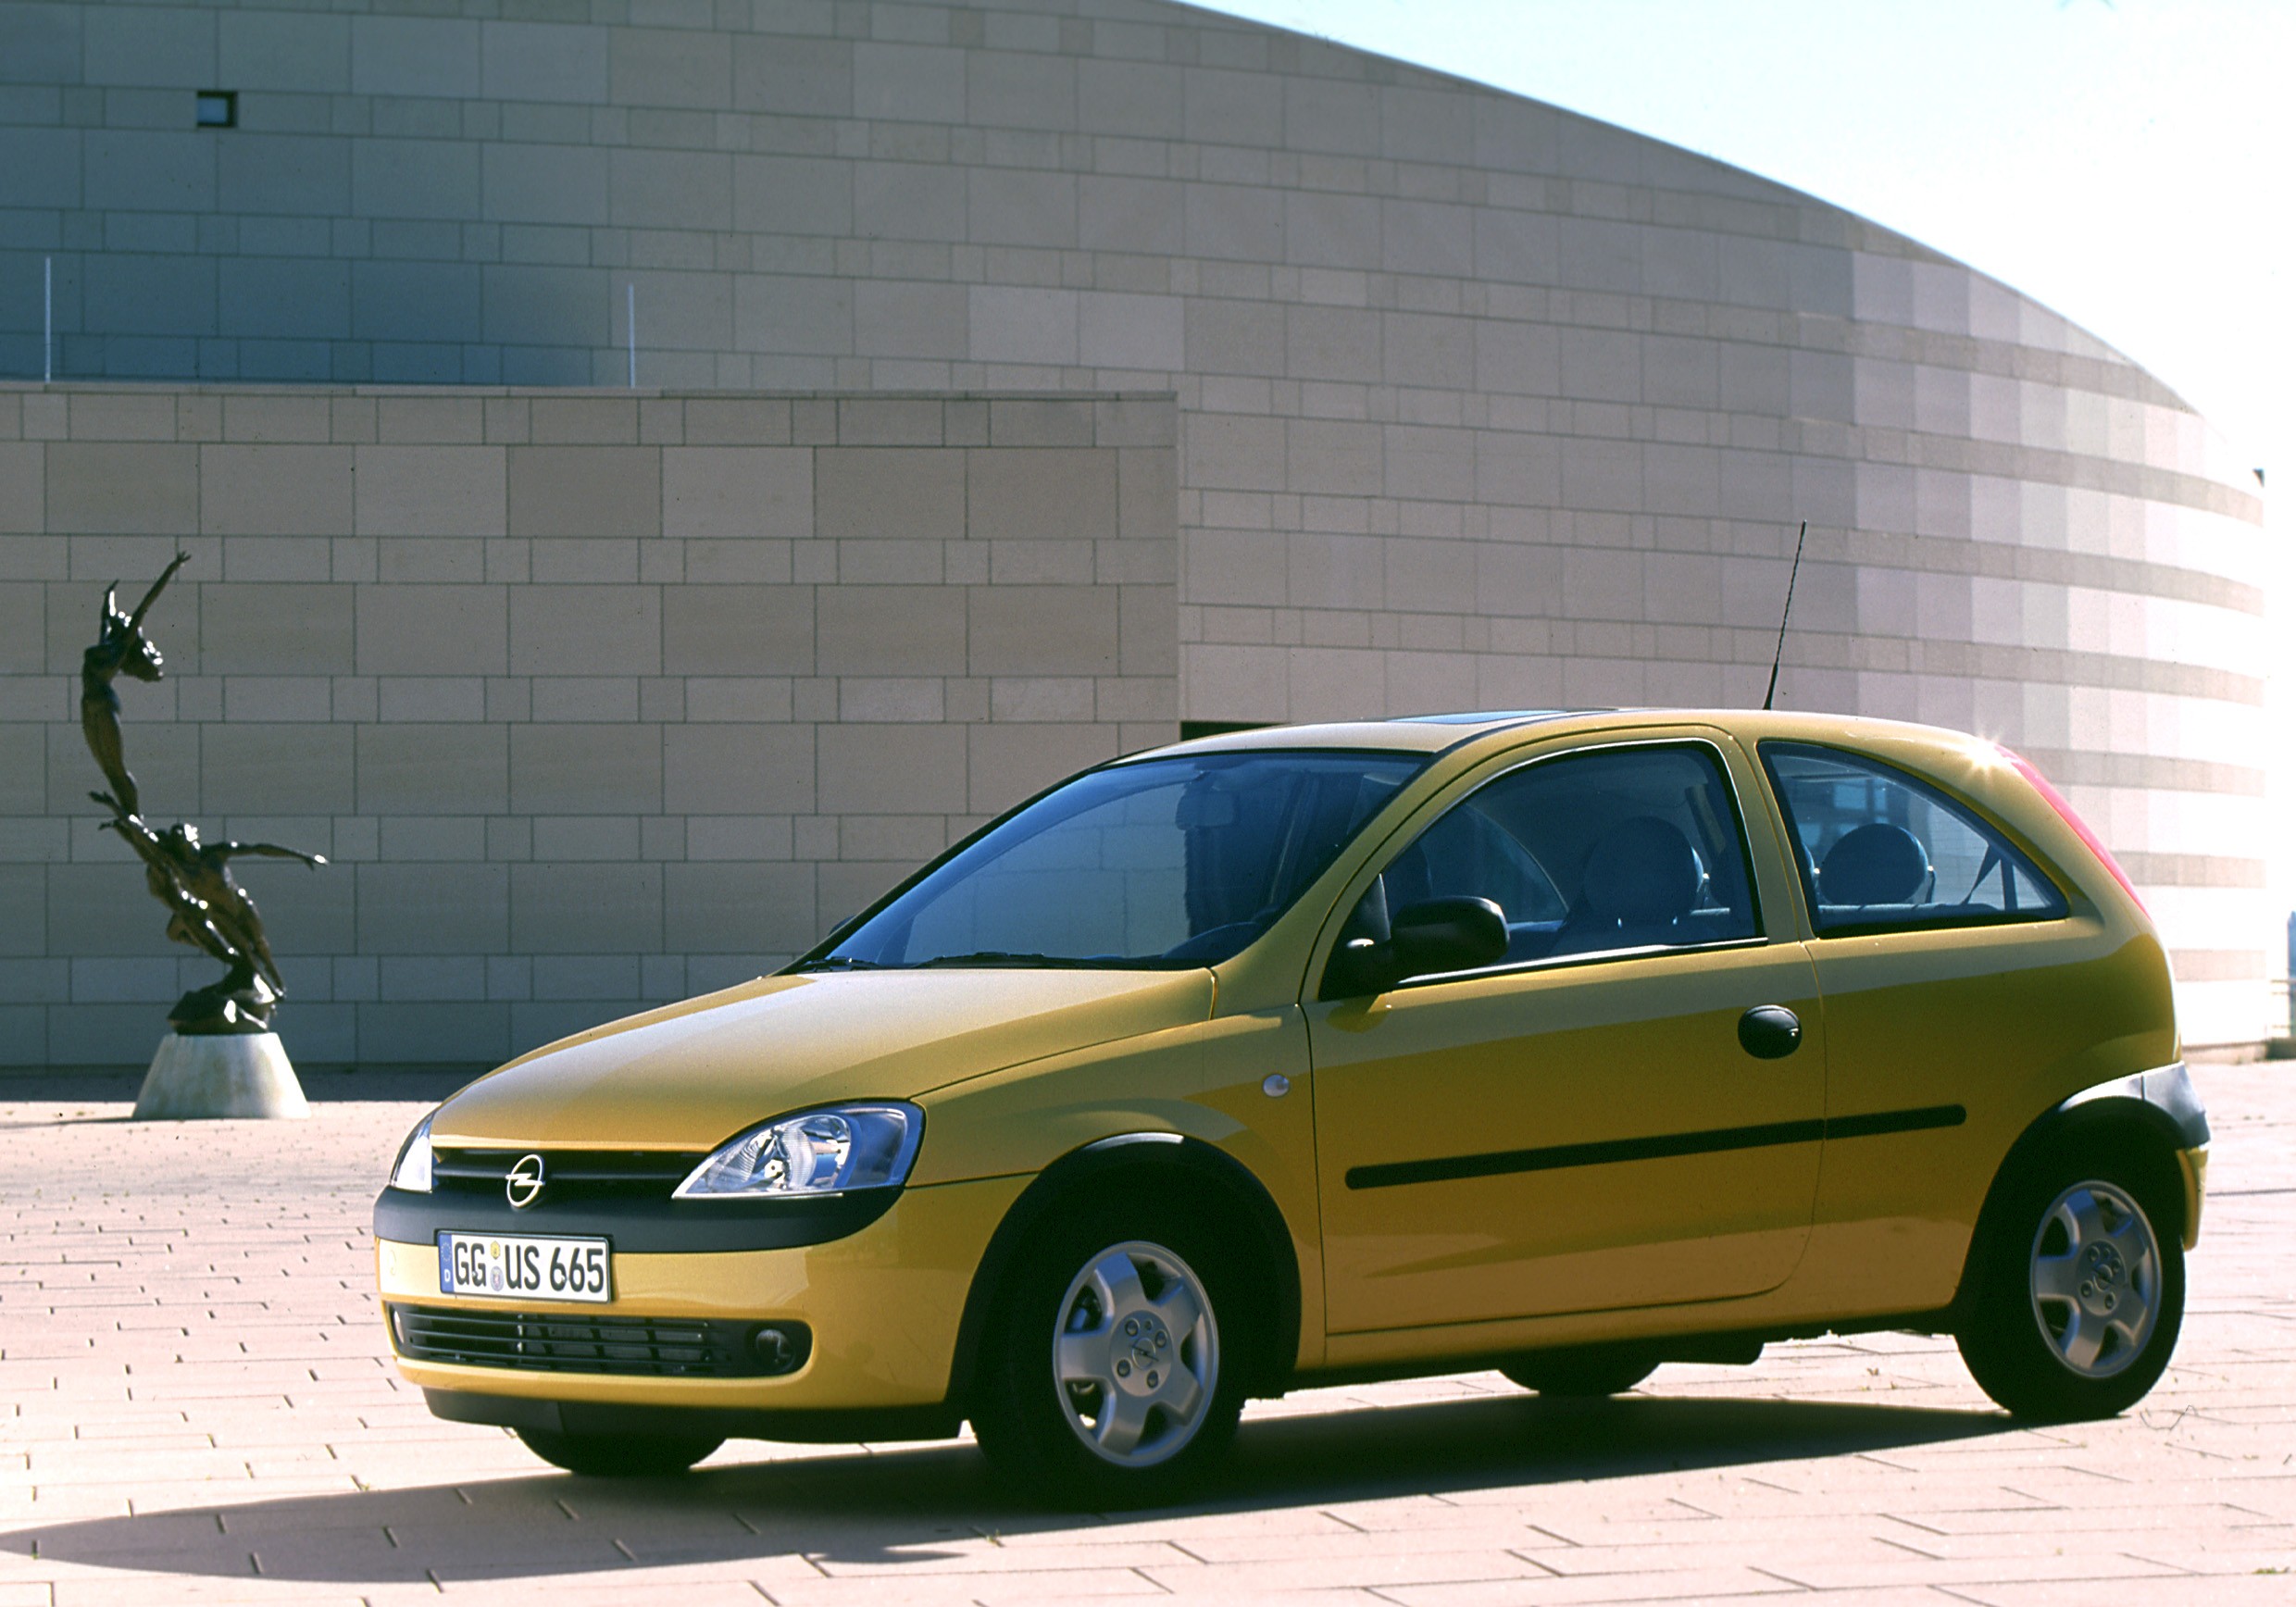 Opel corsa 1.0. Opel Corsa 1.2 2000. Opel Corsa c 2000. Opel Corsa c 1.2. Opel Corsa c 2003.